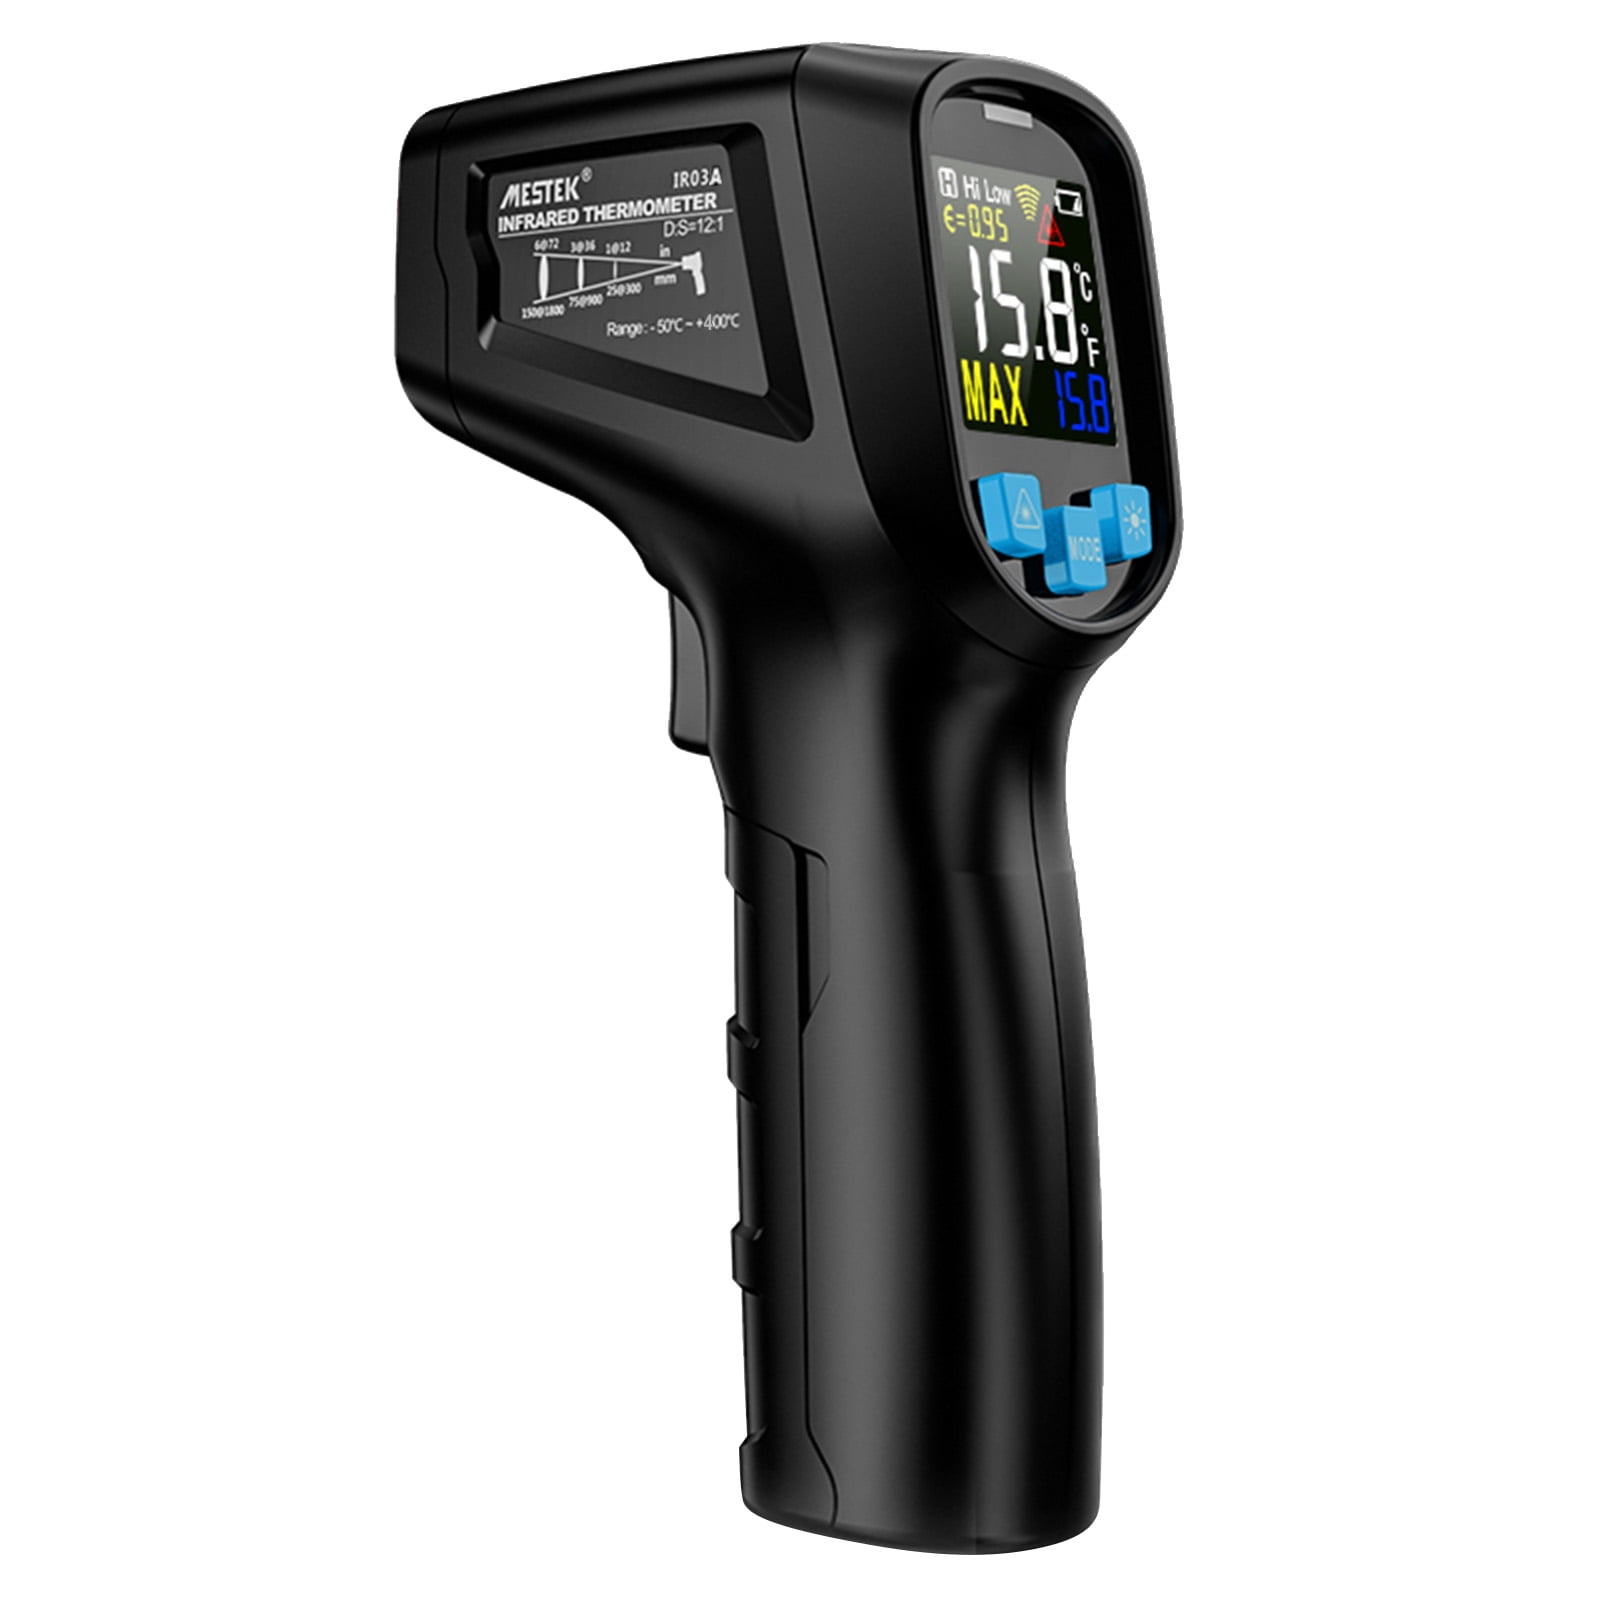 Mestek Infrared Thermometer, MESTEK Digital Temperature gun